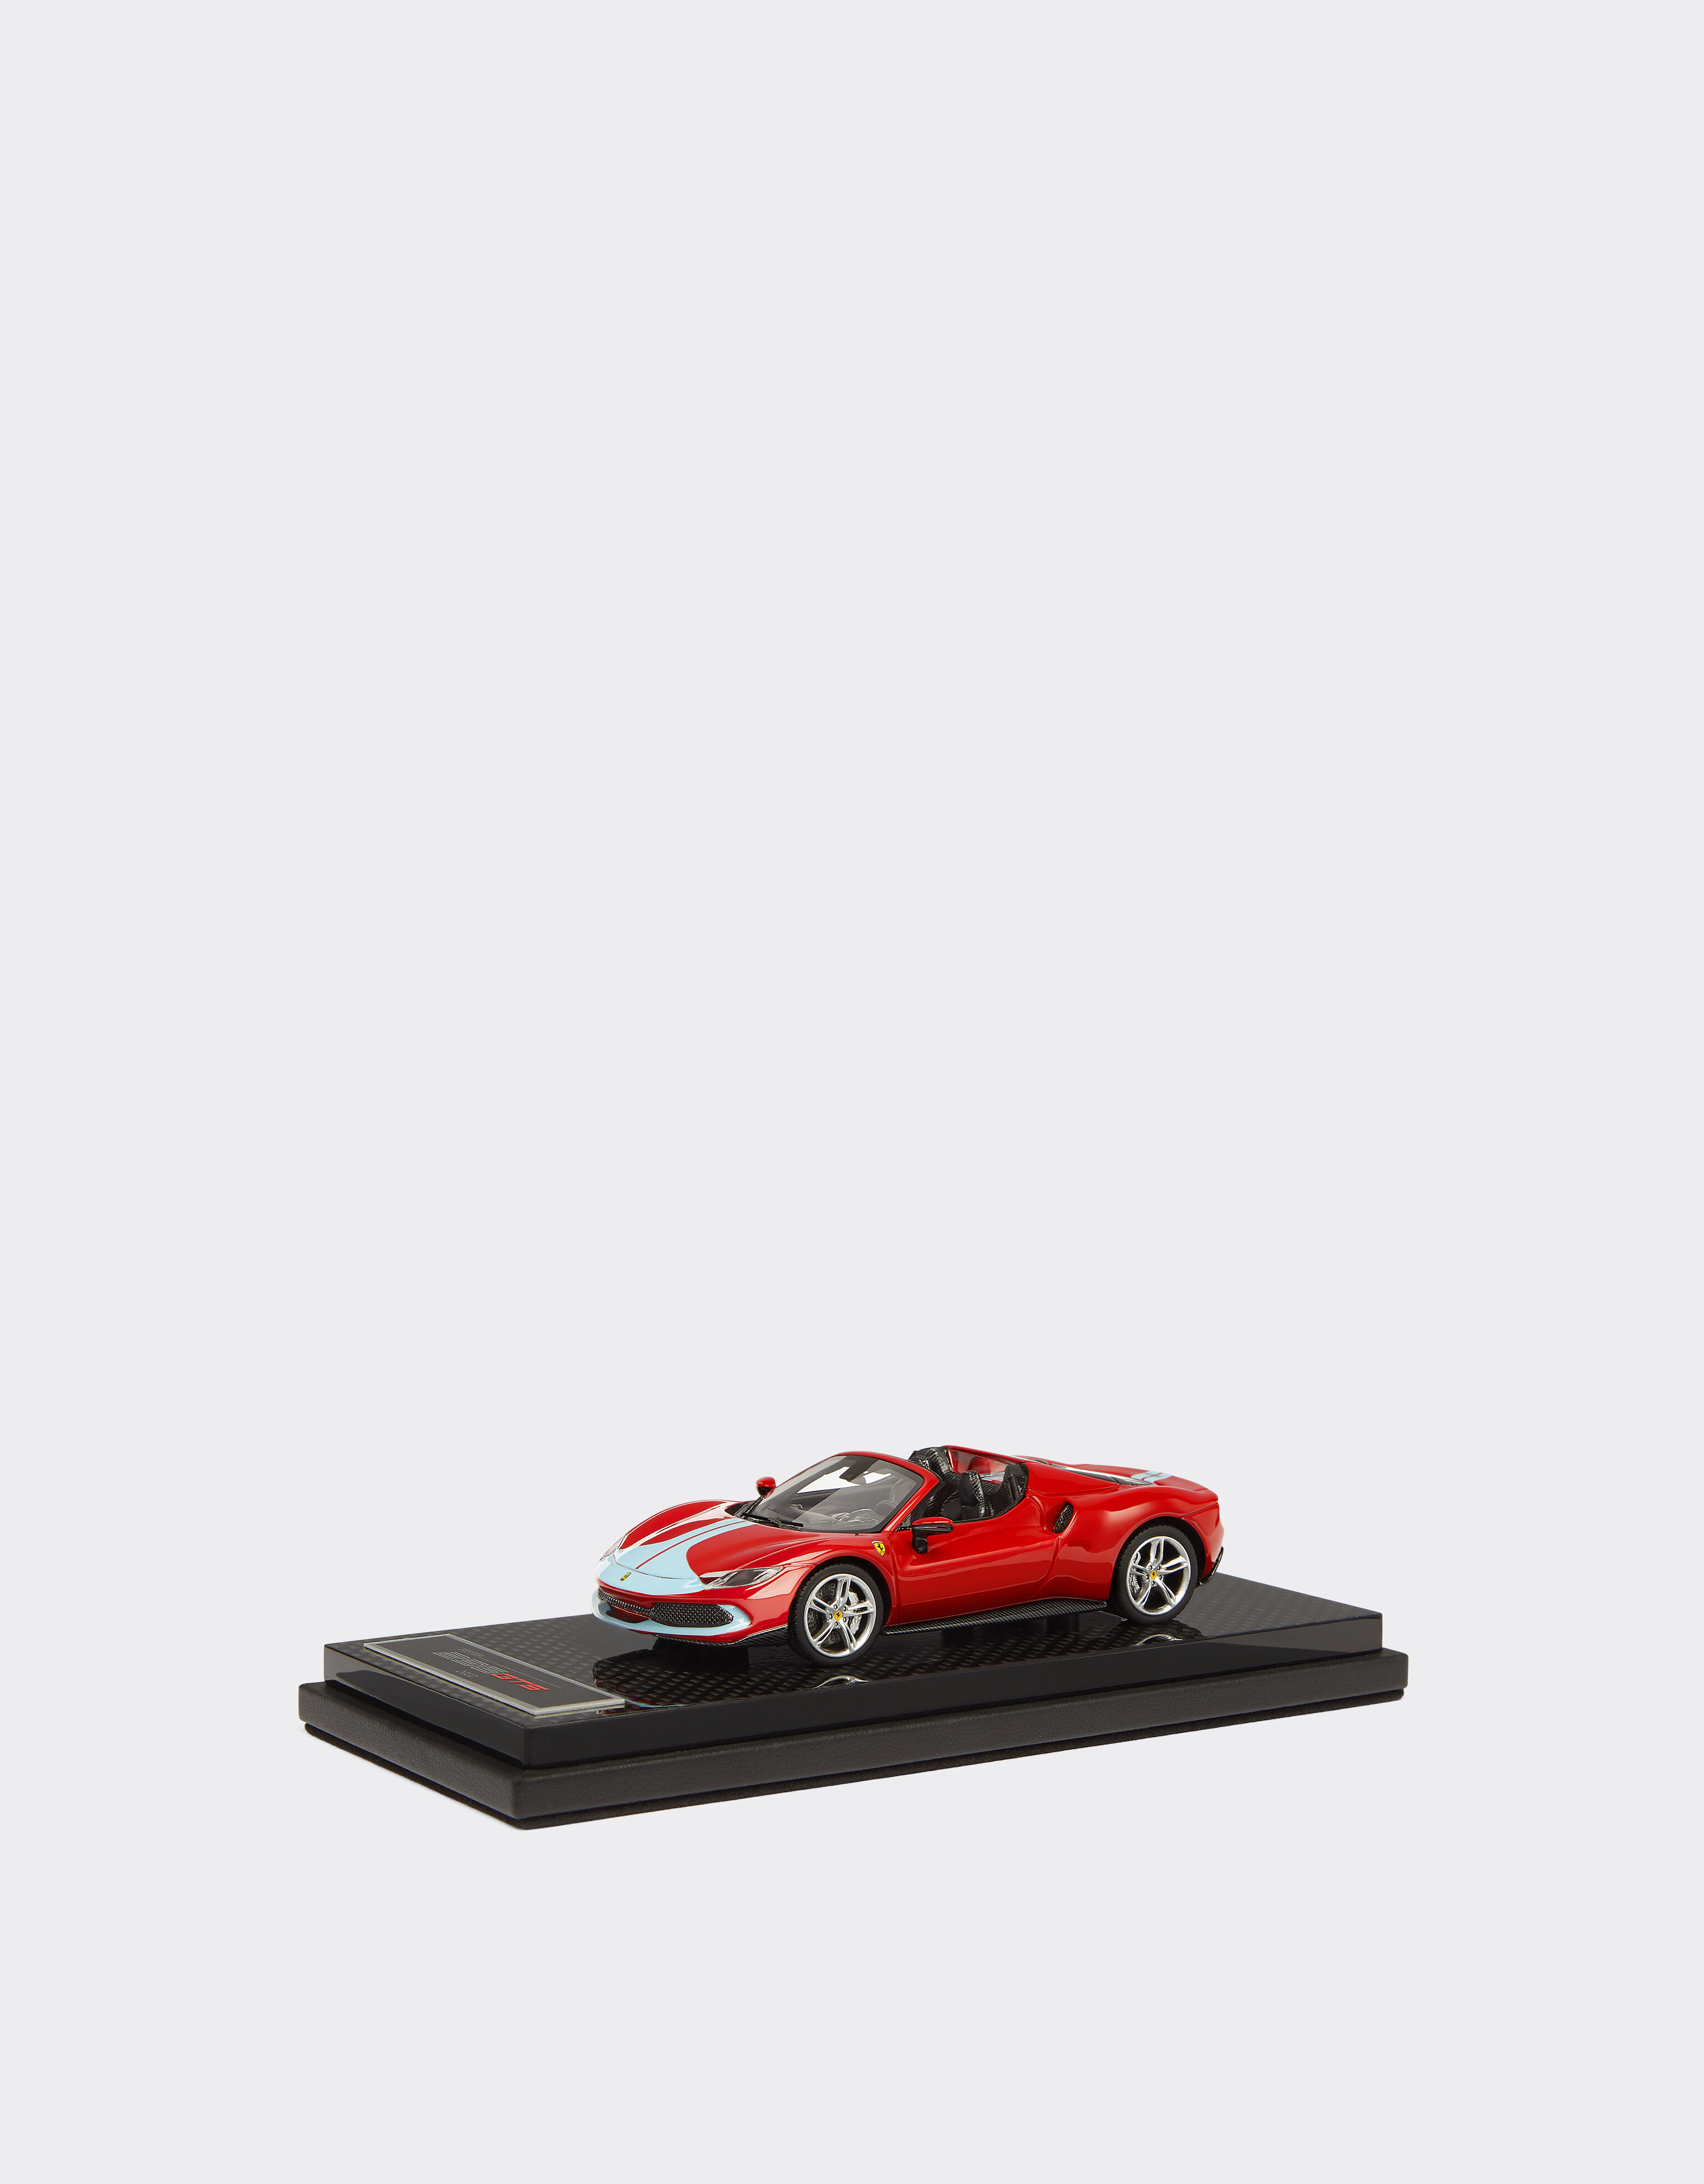 Ferrari Ferrari 296 GTS 1:43 scale model Rosso Corsa 20168f